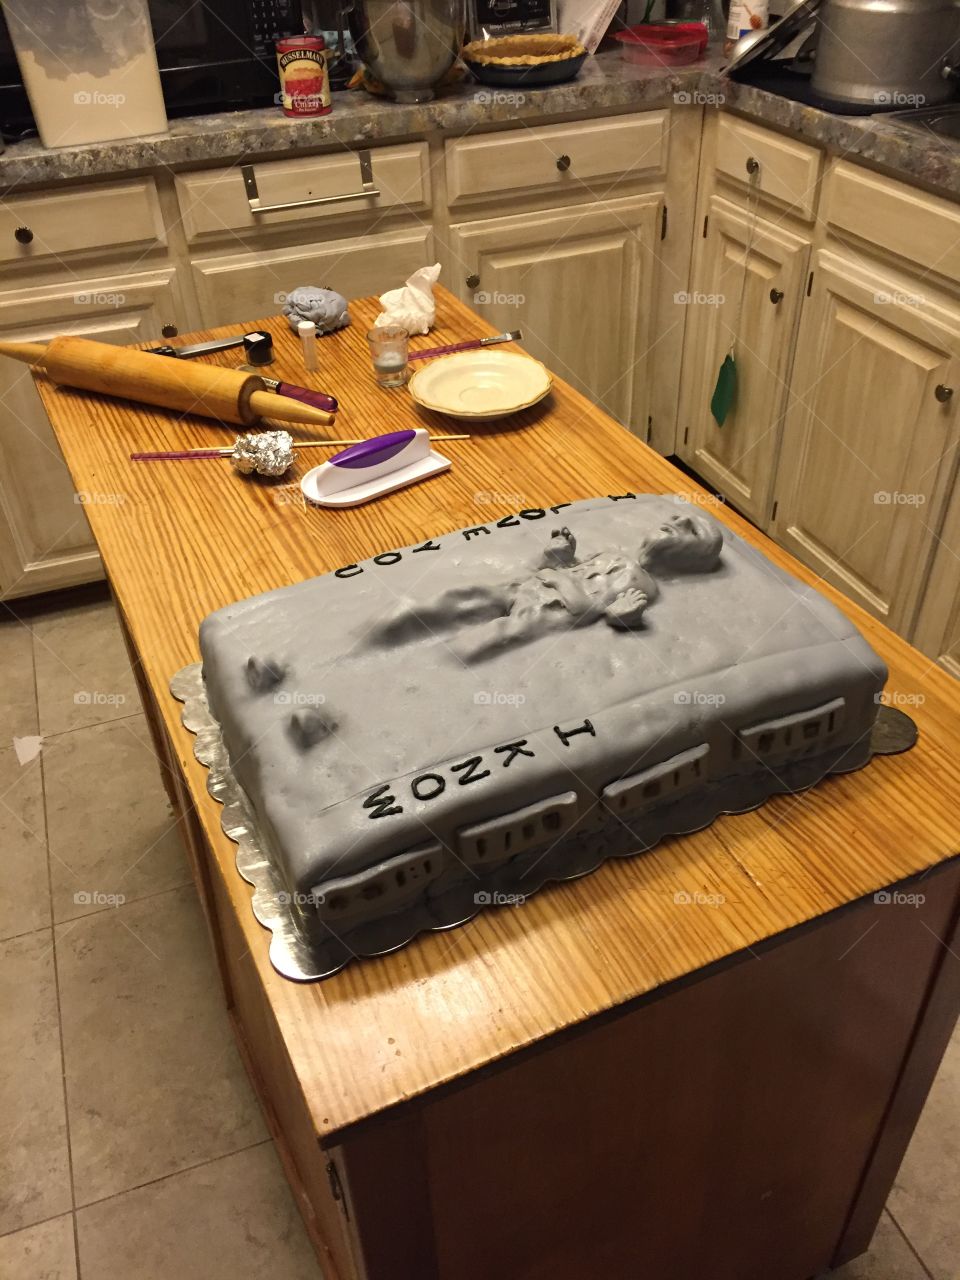 Han Solo Carbonite Cake